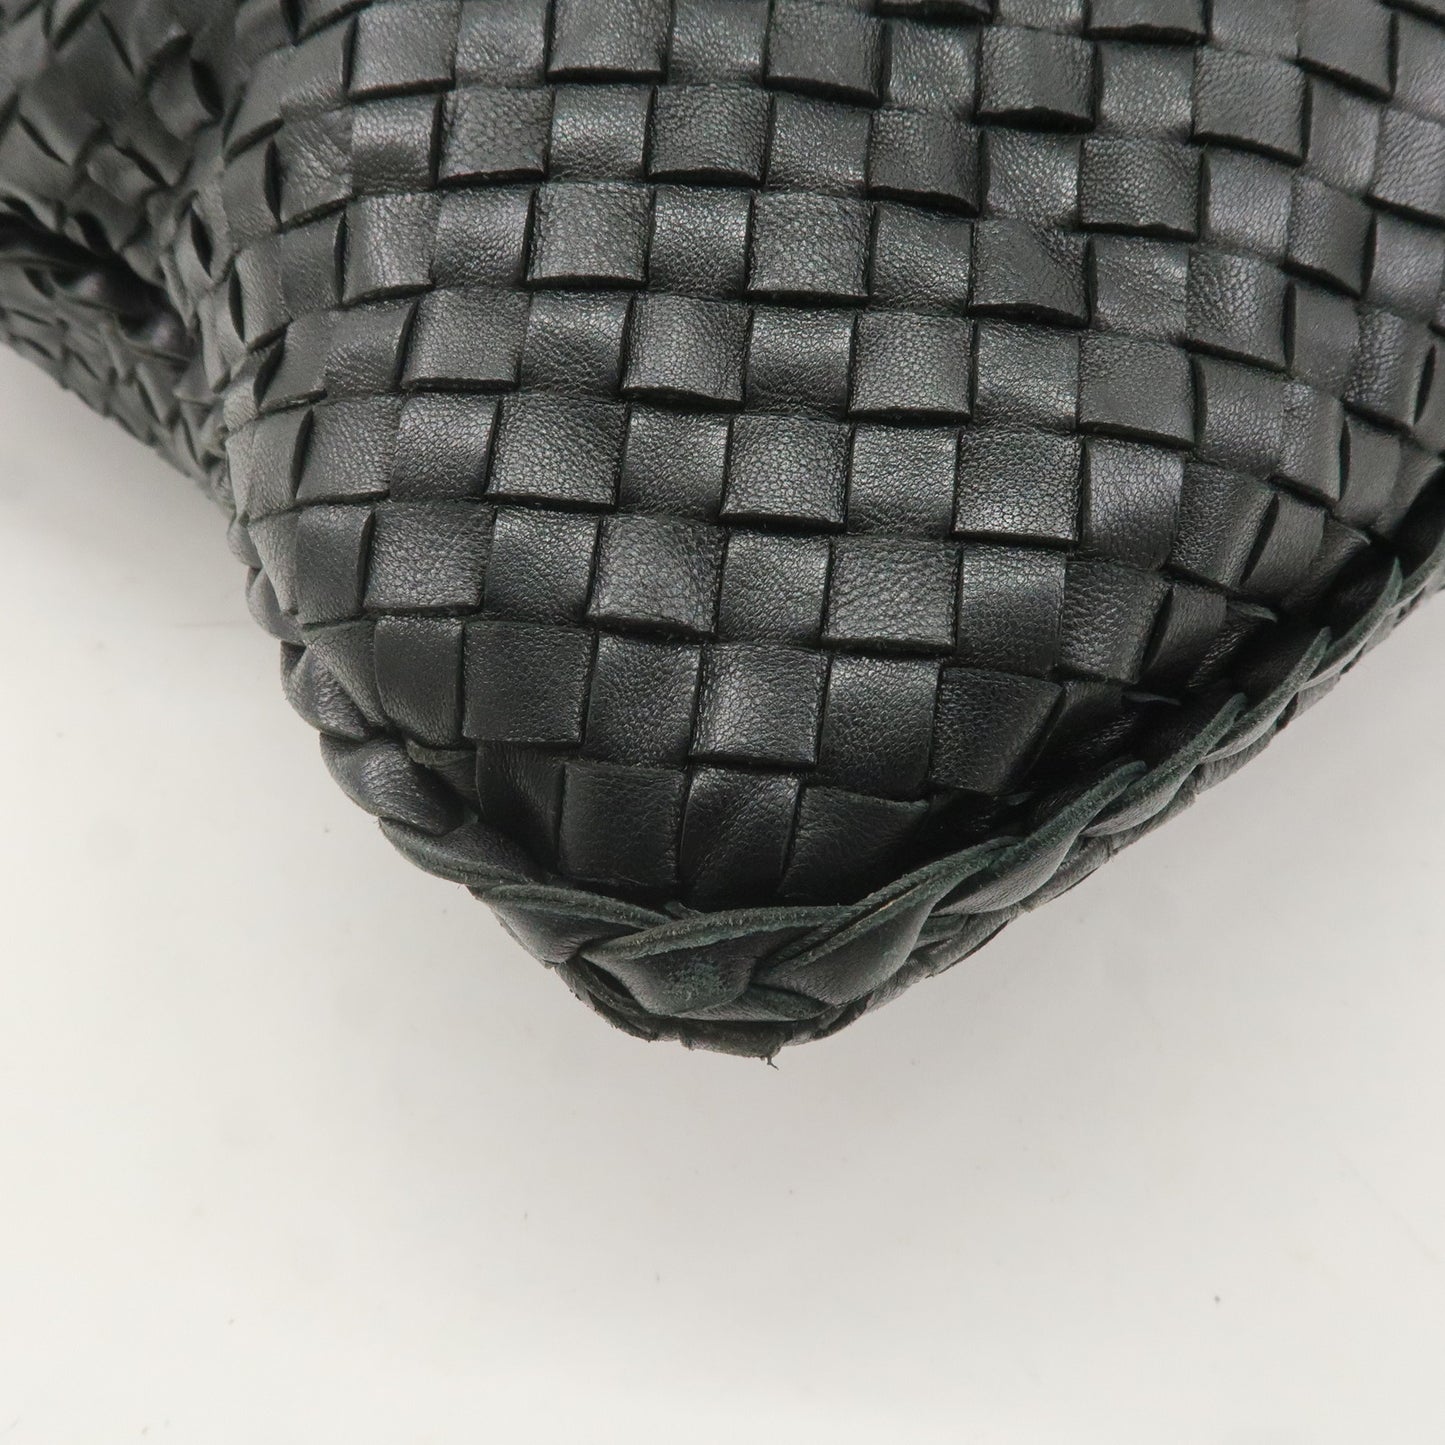 BOTTEGA VENETA Hobo Intrecciato Leather Shoulder Bag Black 181140